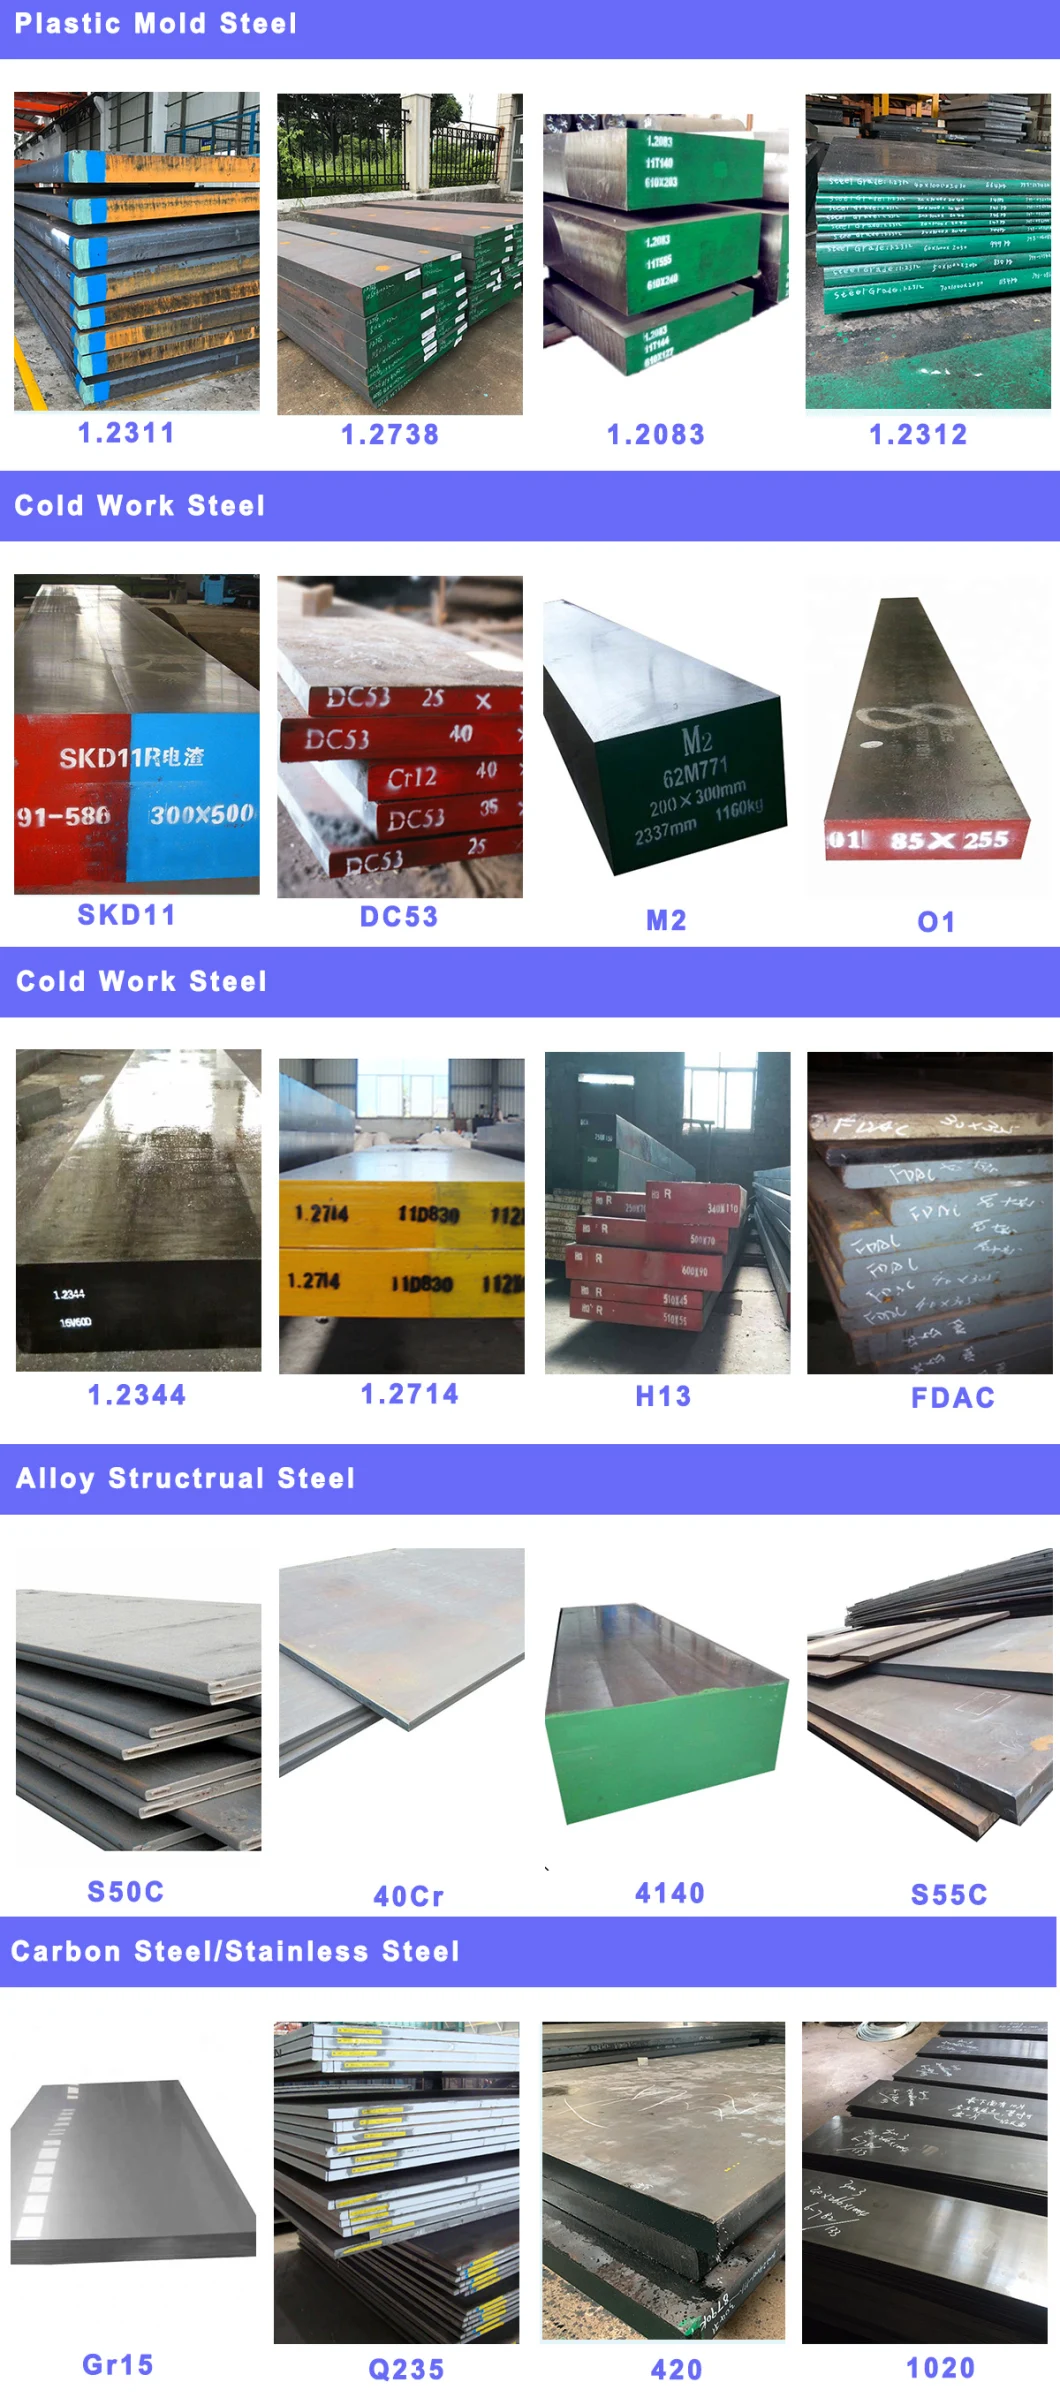 Ground Steel Flat Bar Milling Steel Alloy Steel Bar D3 SKD1 1.2080 Mould Steel Flat Bars